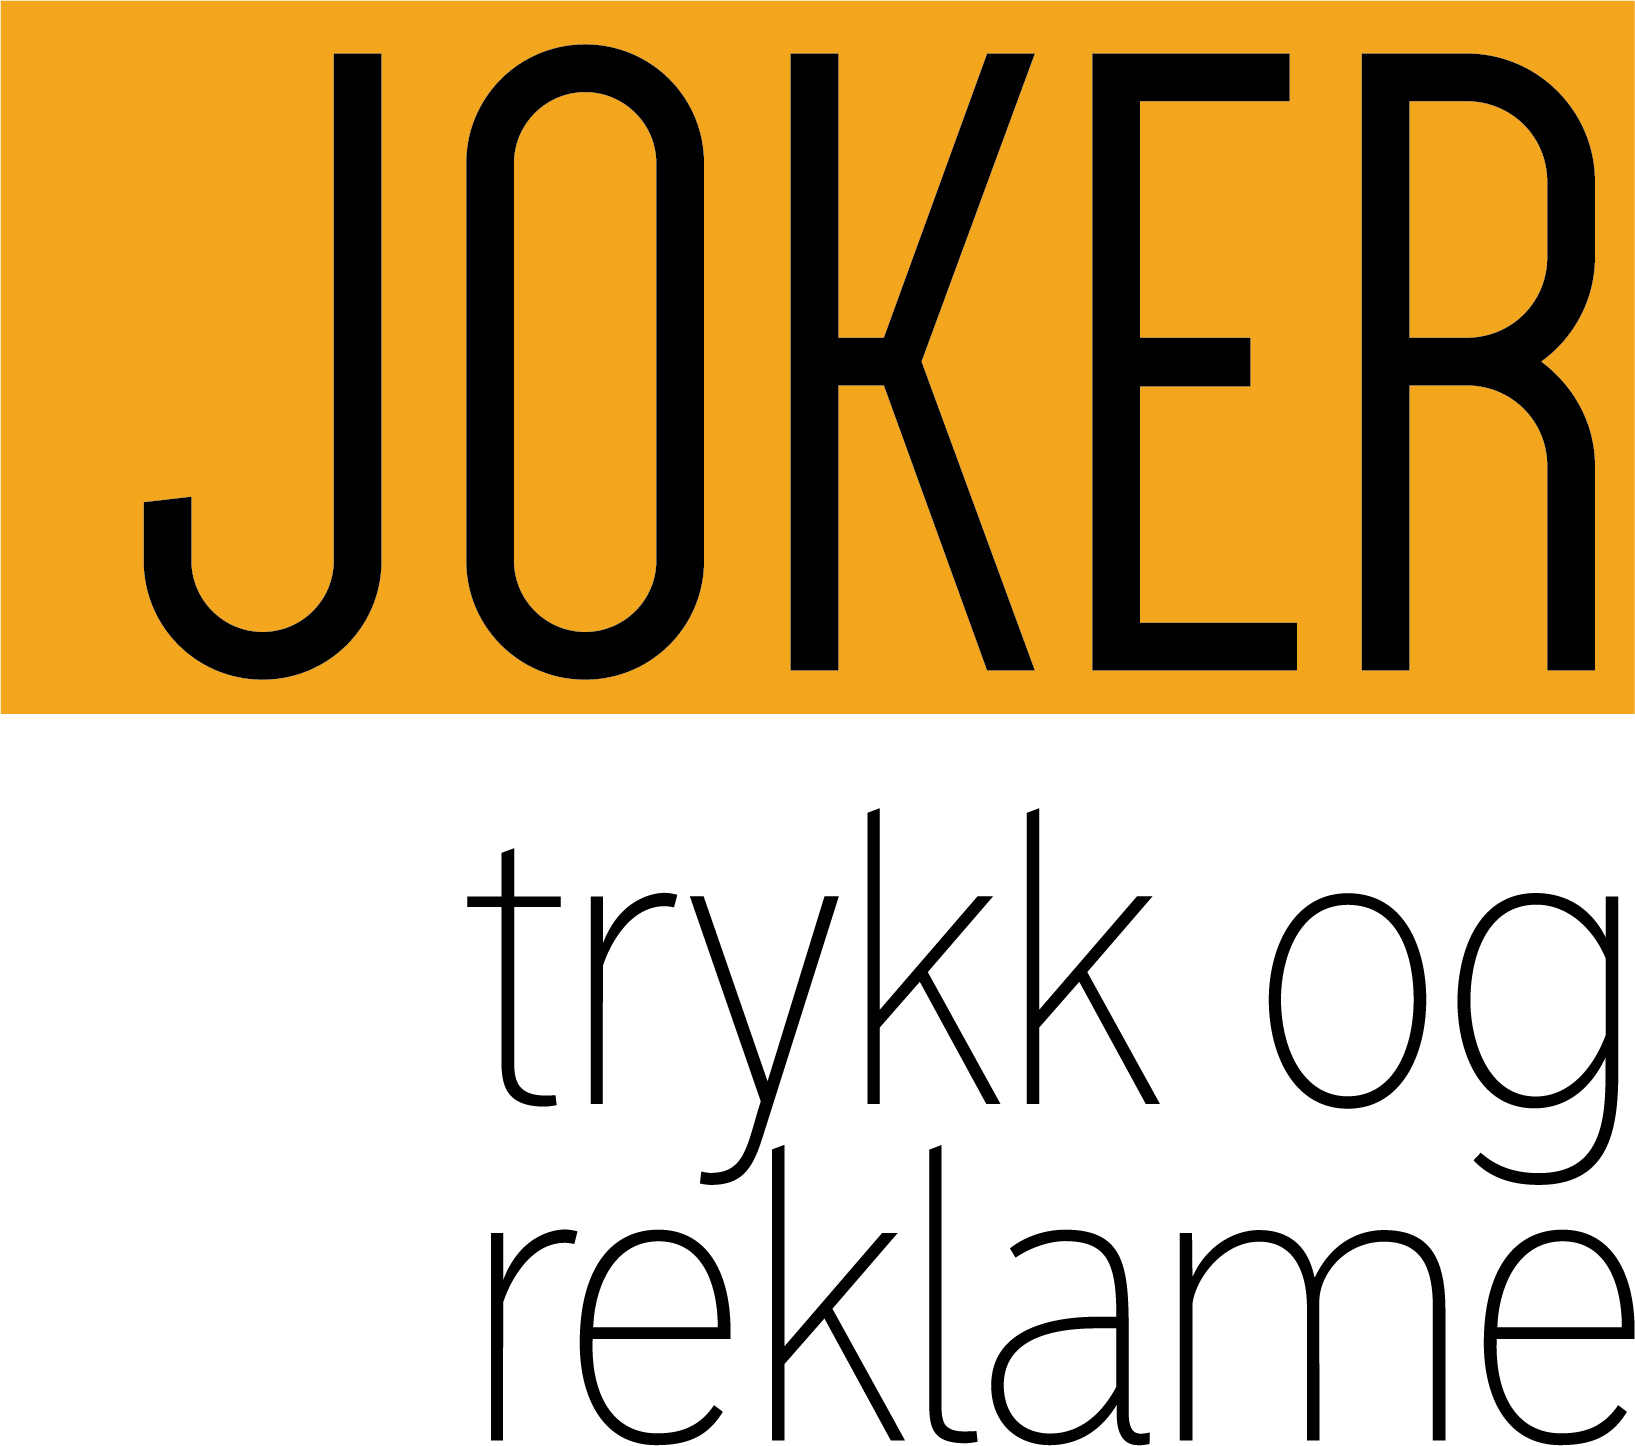 Joker Event